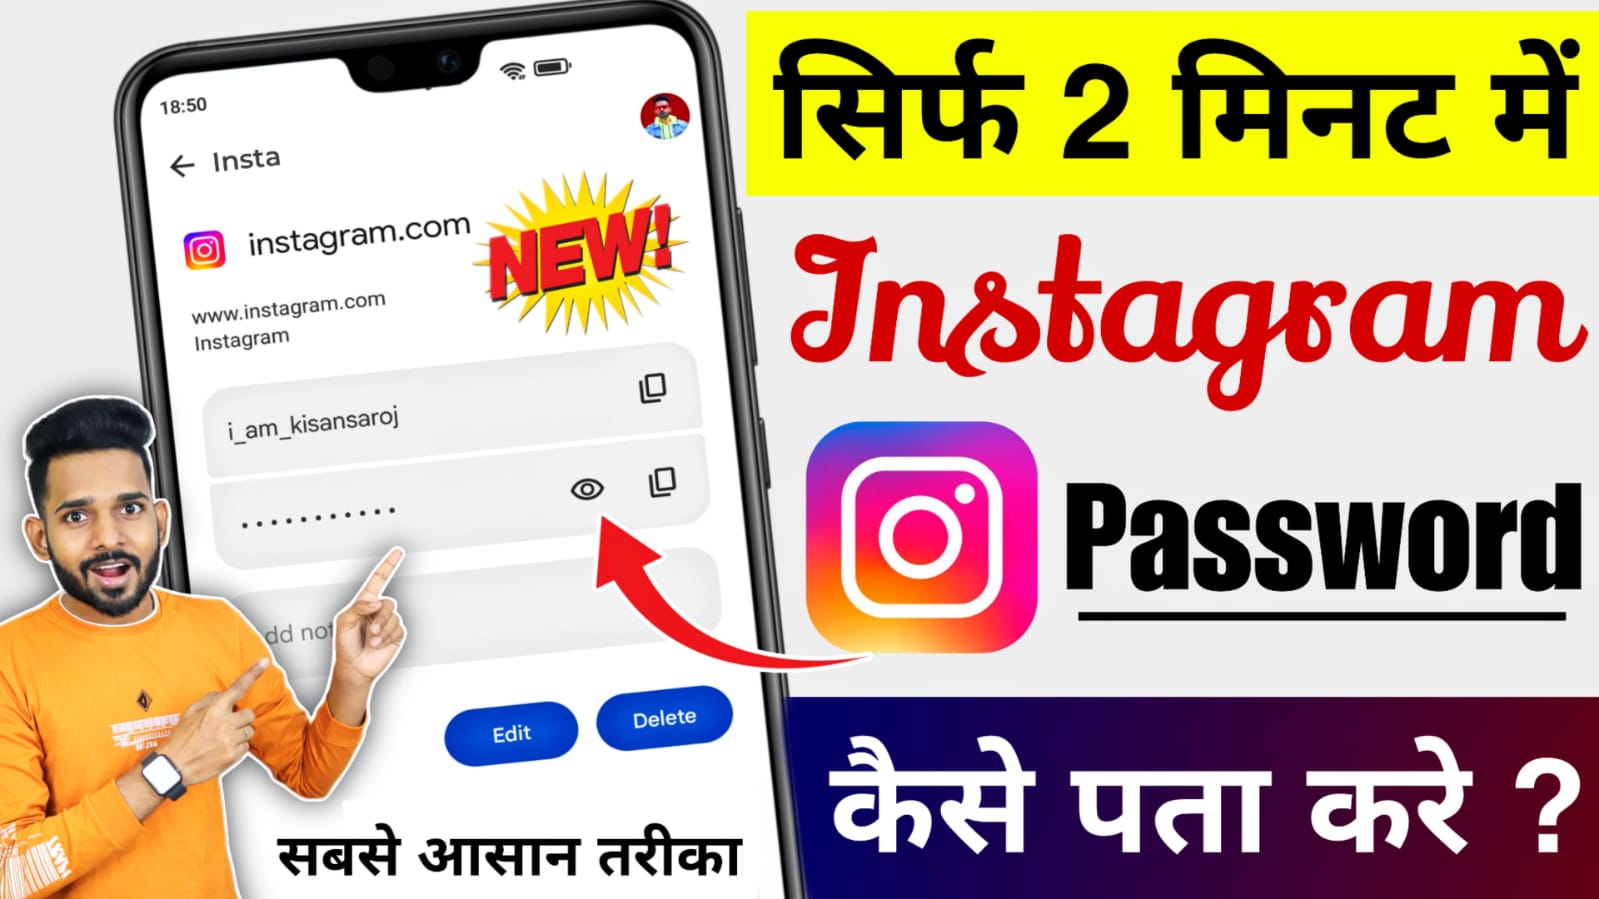 Instagram Password Kaise Pata Kare